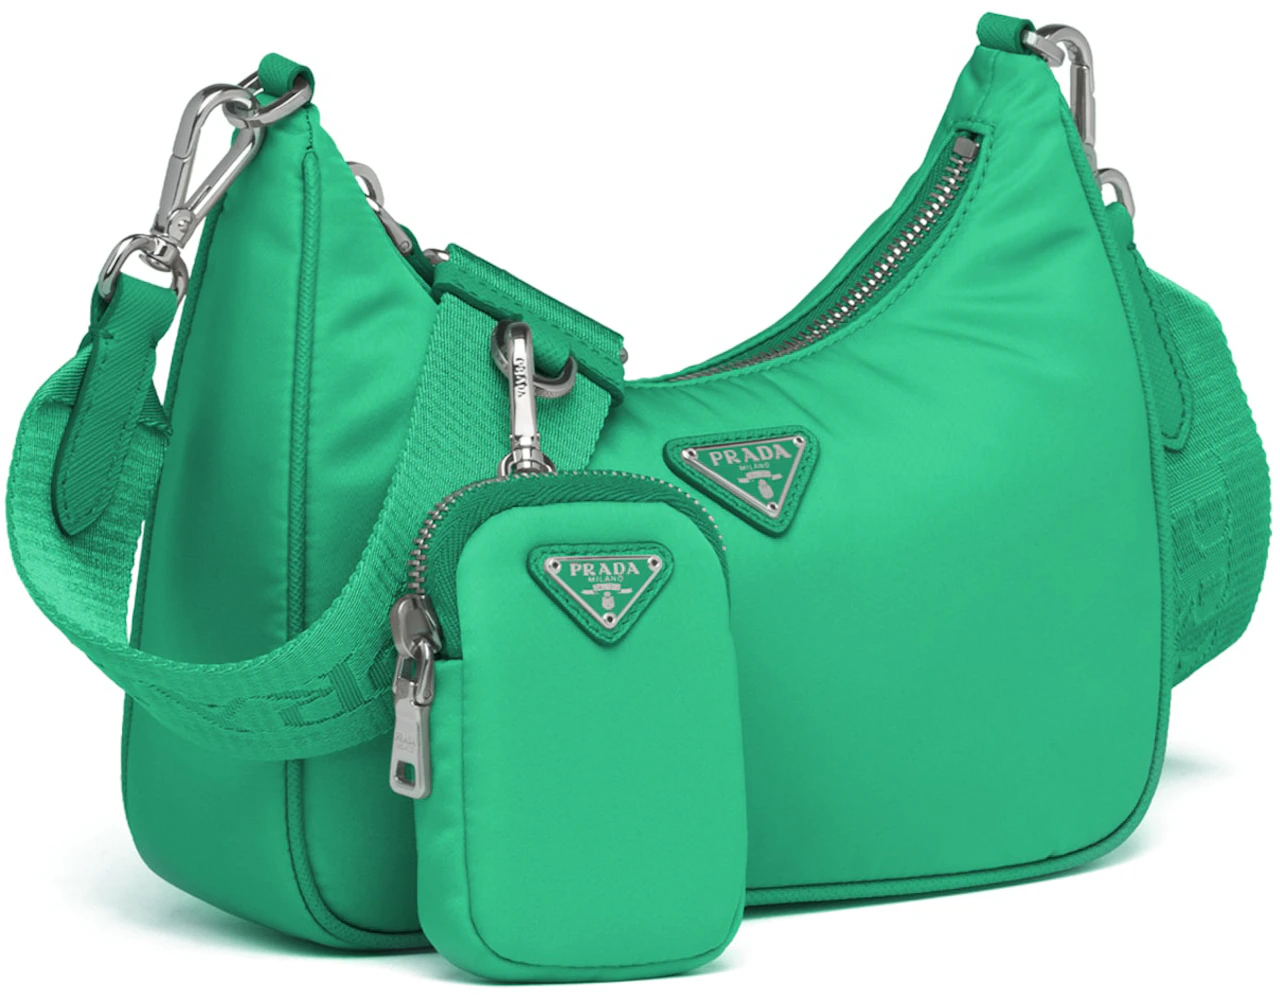 Prada bag  Bags, Green prada bag, Fancy bags